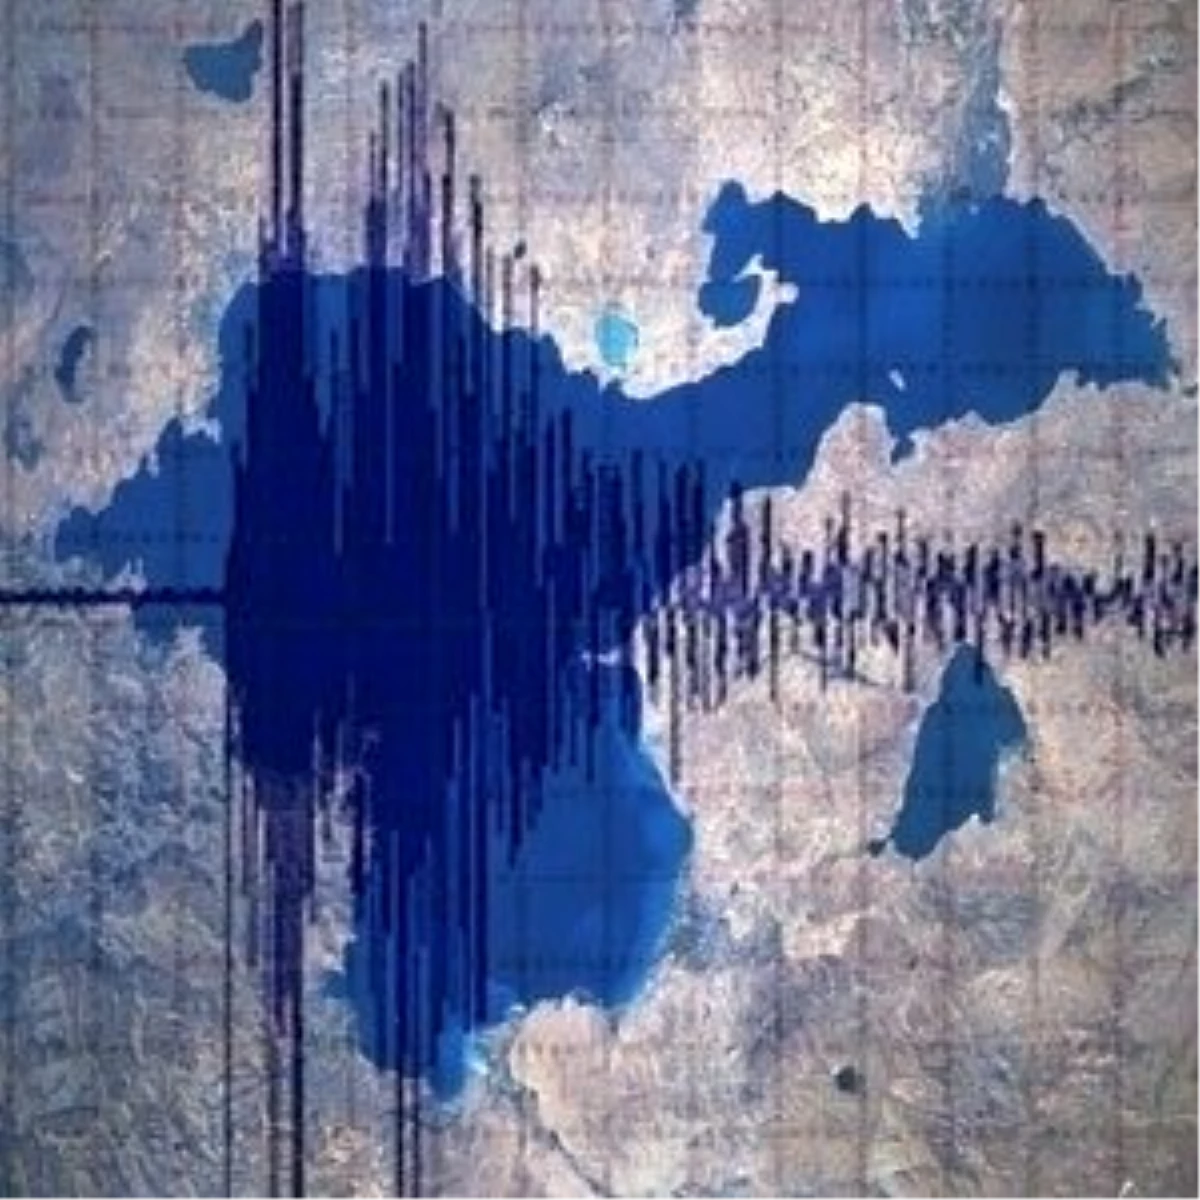 Van Depreminin Raporunu Açıkladılar